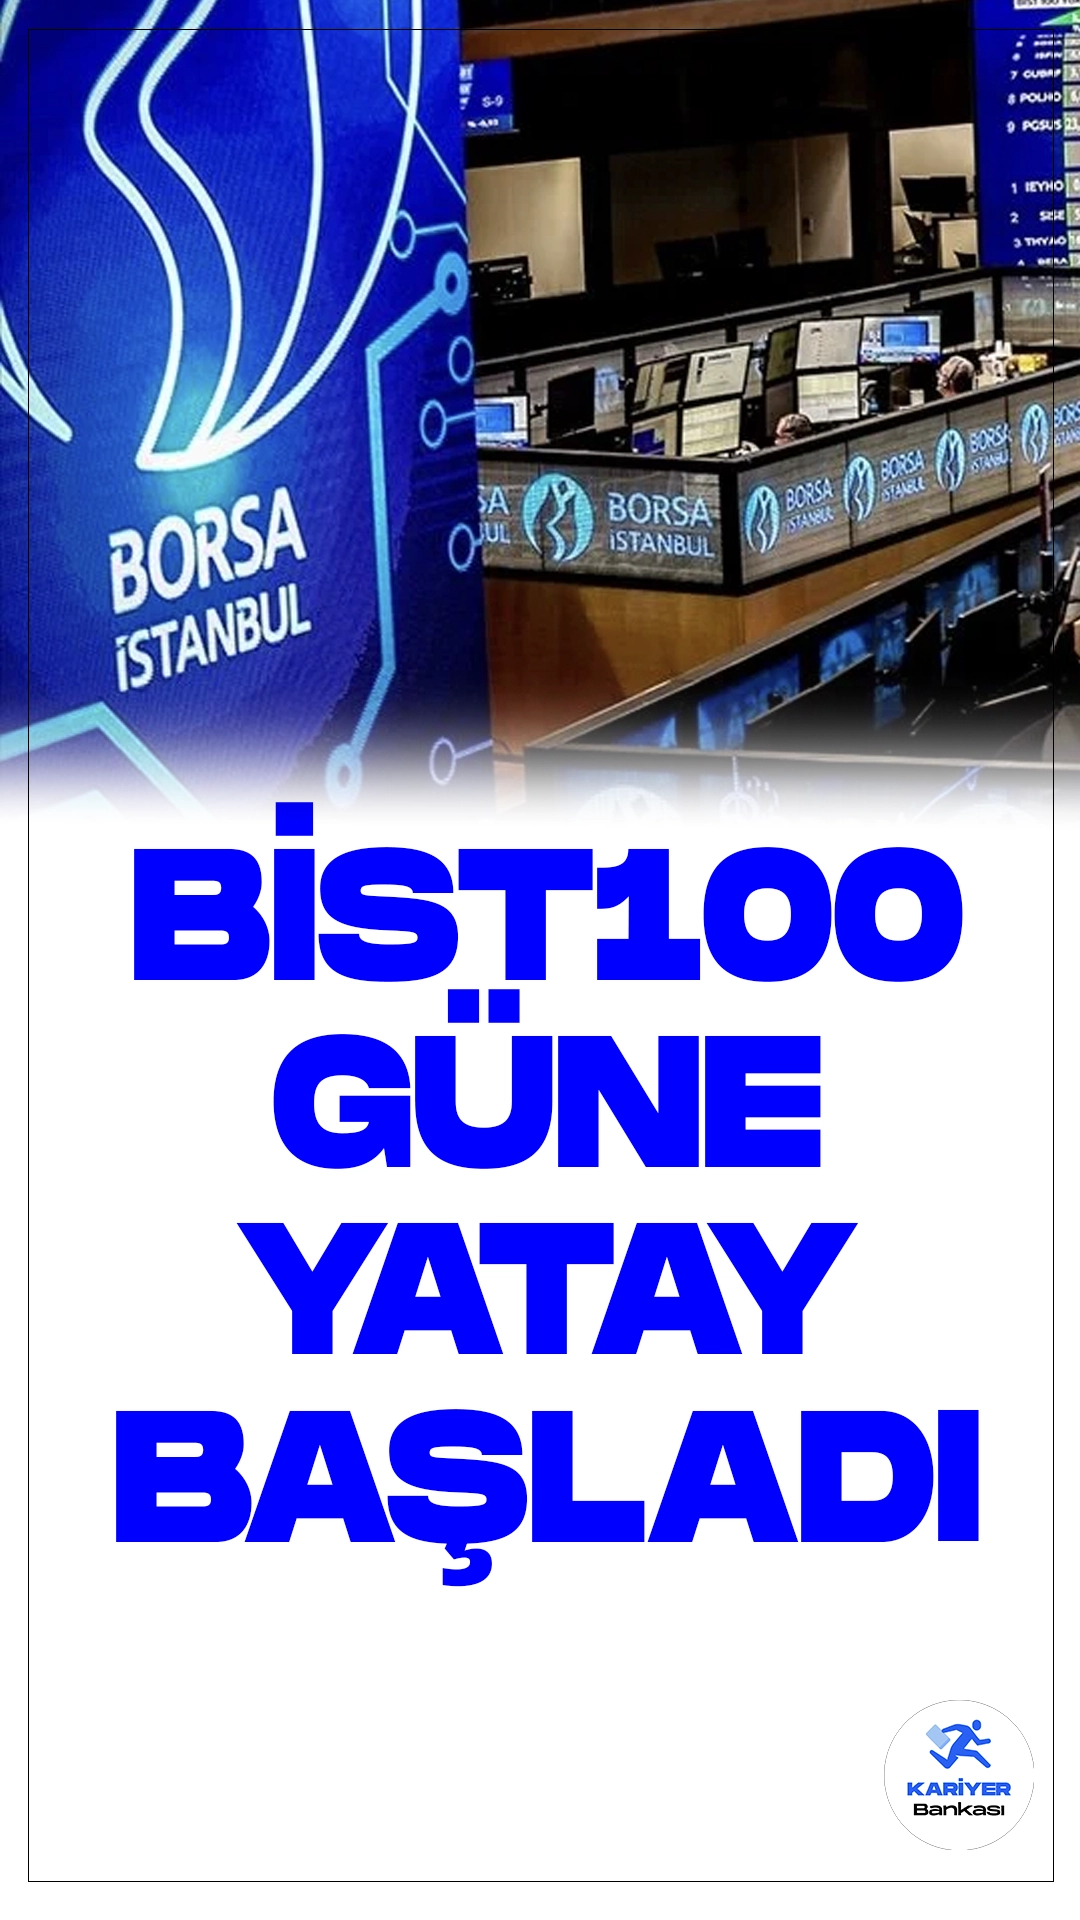 BIST 100 Güne Yatay Başladı: Piyasa İzleniyor.Borsa İstanbul'da işlem gören BIST 100 endeksi, güne yatay bir seyirle 9.029,50 puandan başladı. Açılışta BIST 100 endeksi, önceki kapanışa göre 0,12 puan değer kazanarak 9.029,50 puana çıktı.